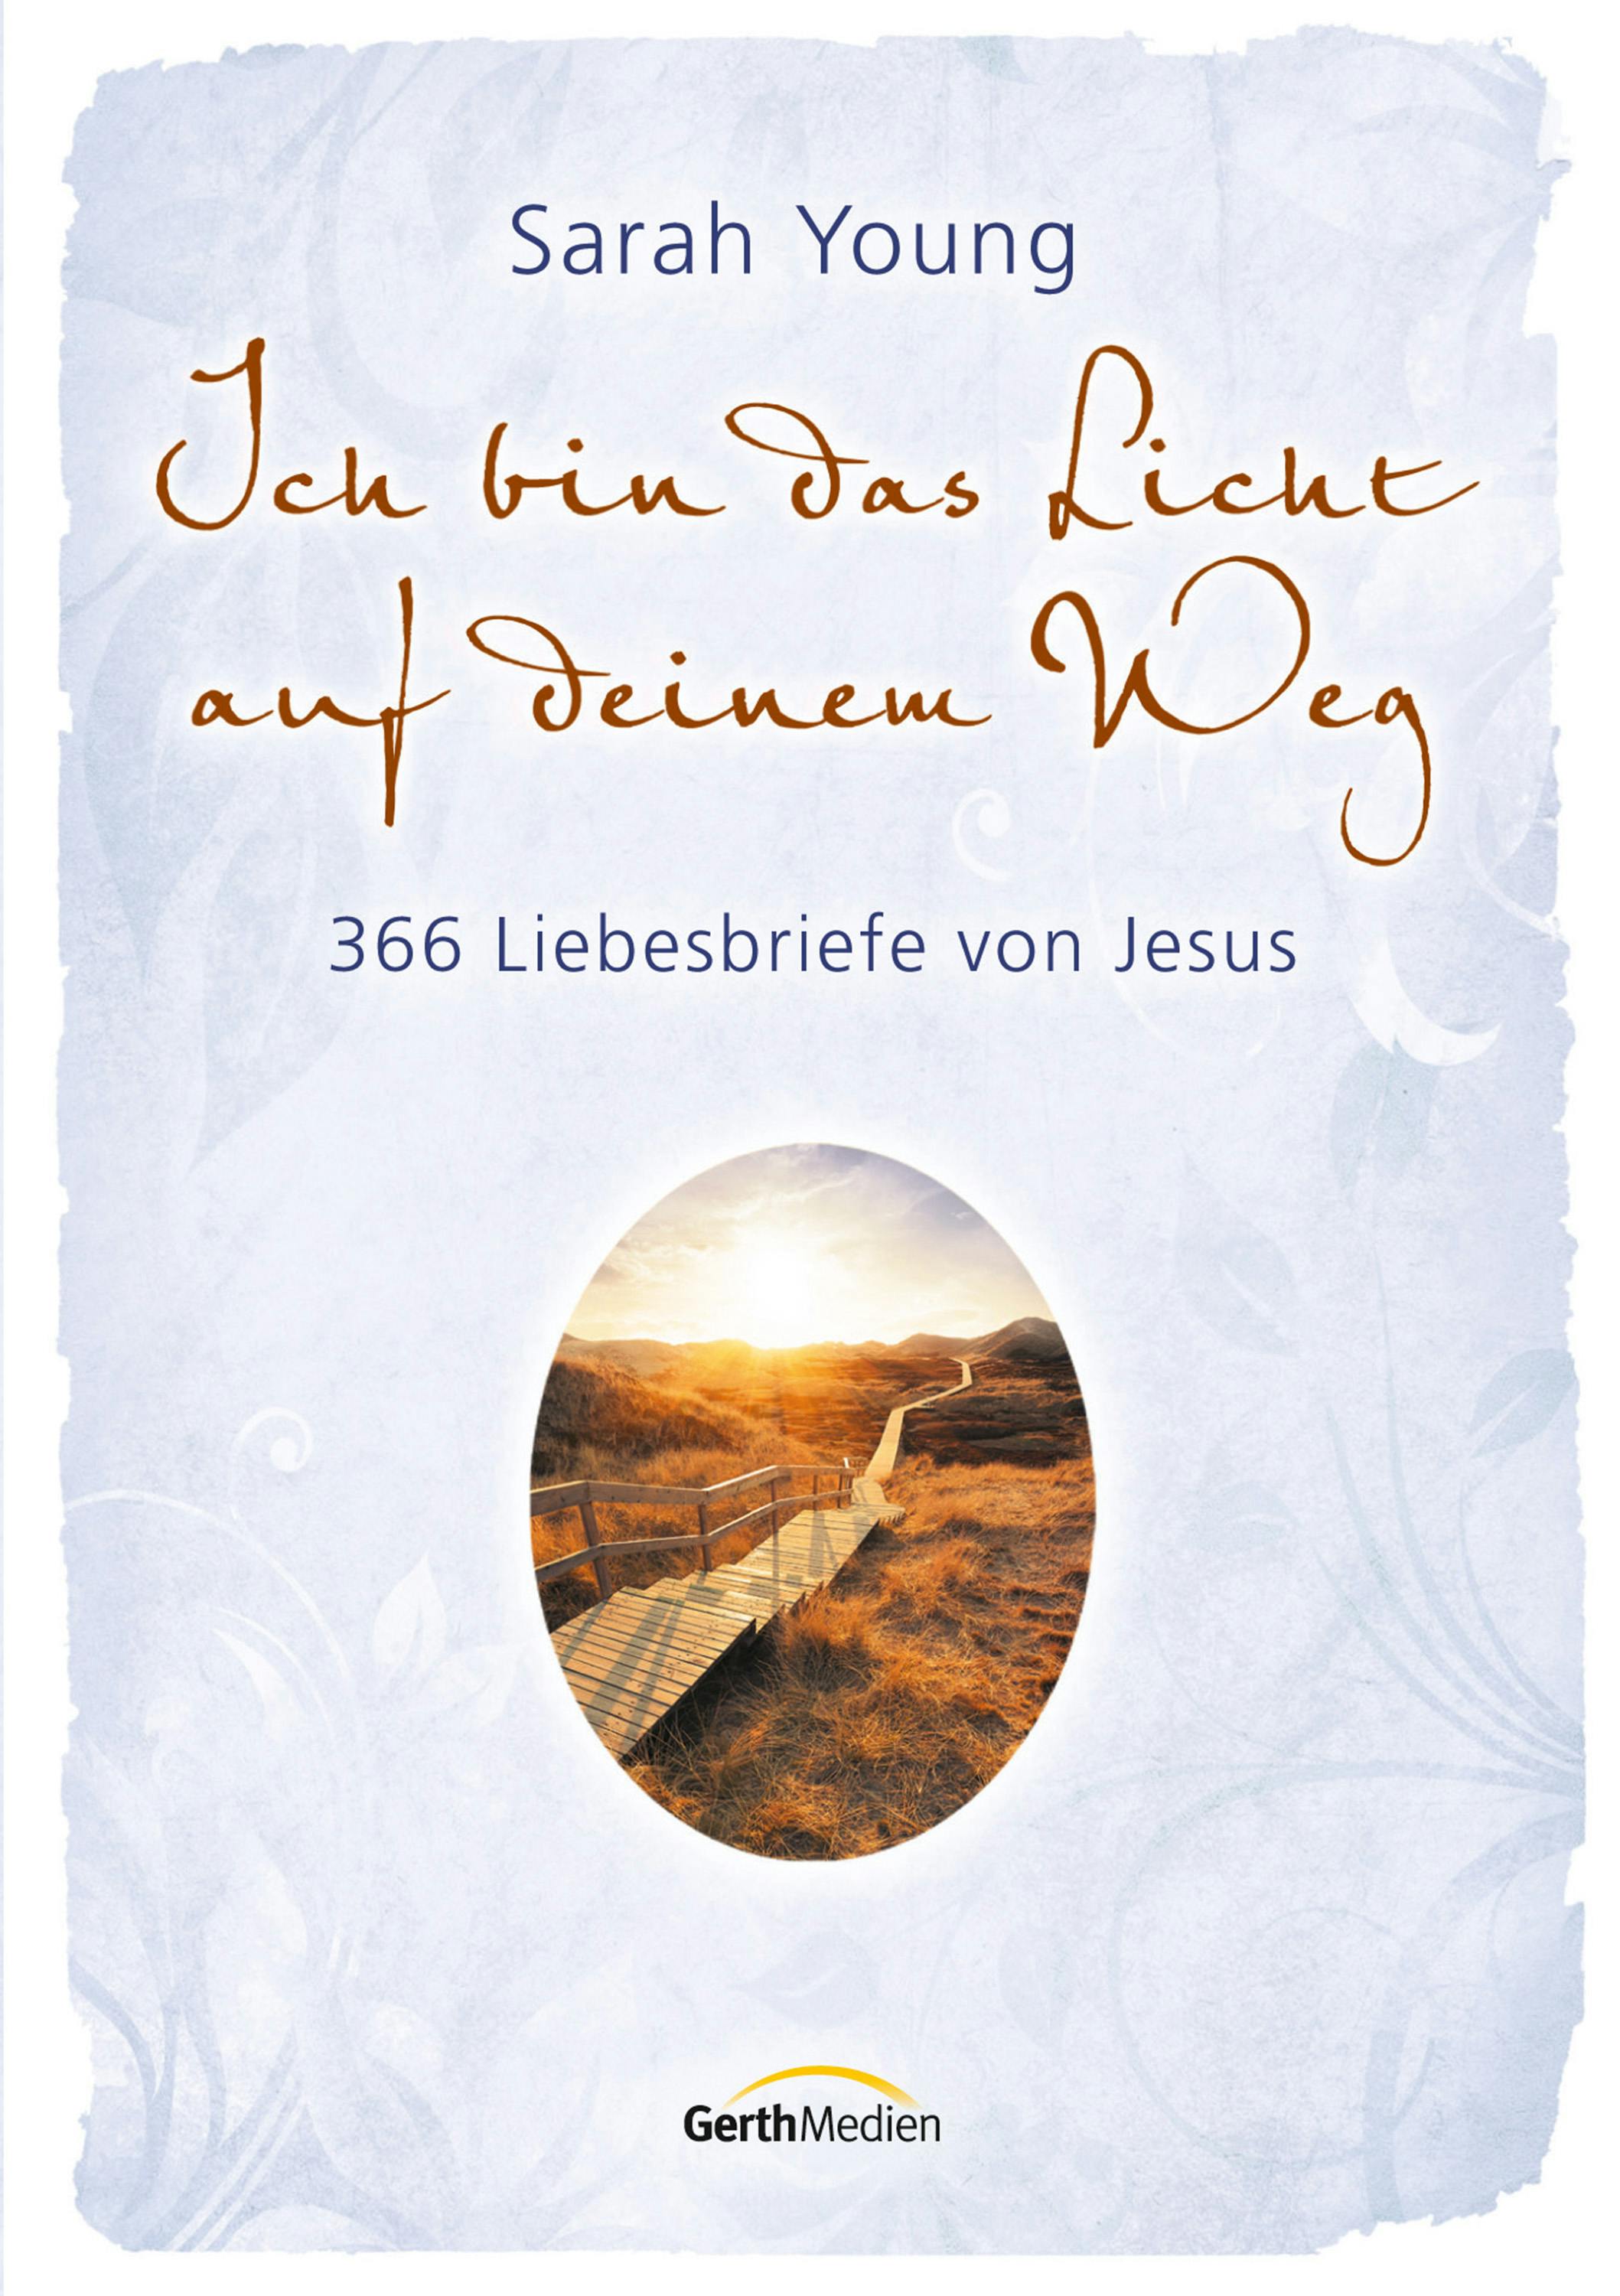 Ich bin das Licht auf deinem Weg: 366 Liebesbriefe von Jesus. - Sarah Young